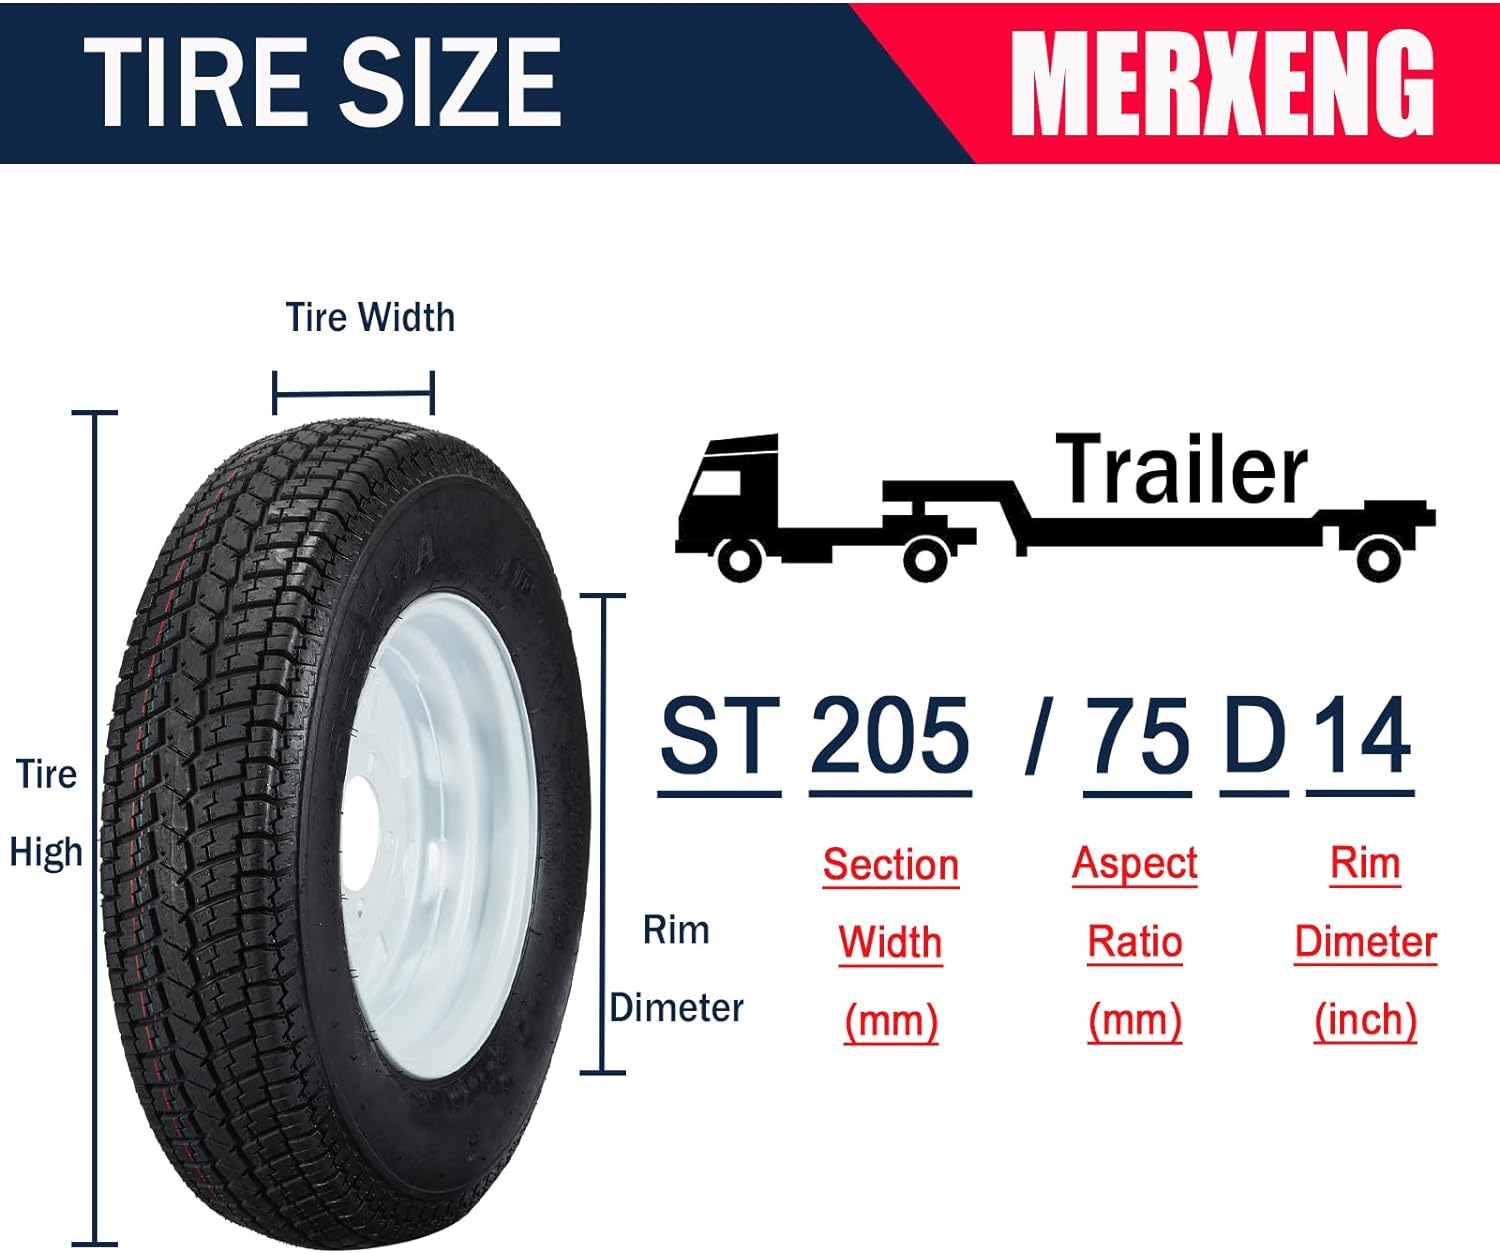 Trailer Tires Rims ST205/75D14 205/75 14 Tire 5 Lug White Spoke Wheel Load Range C, 6 PLY, Set of 2